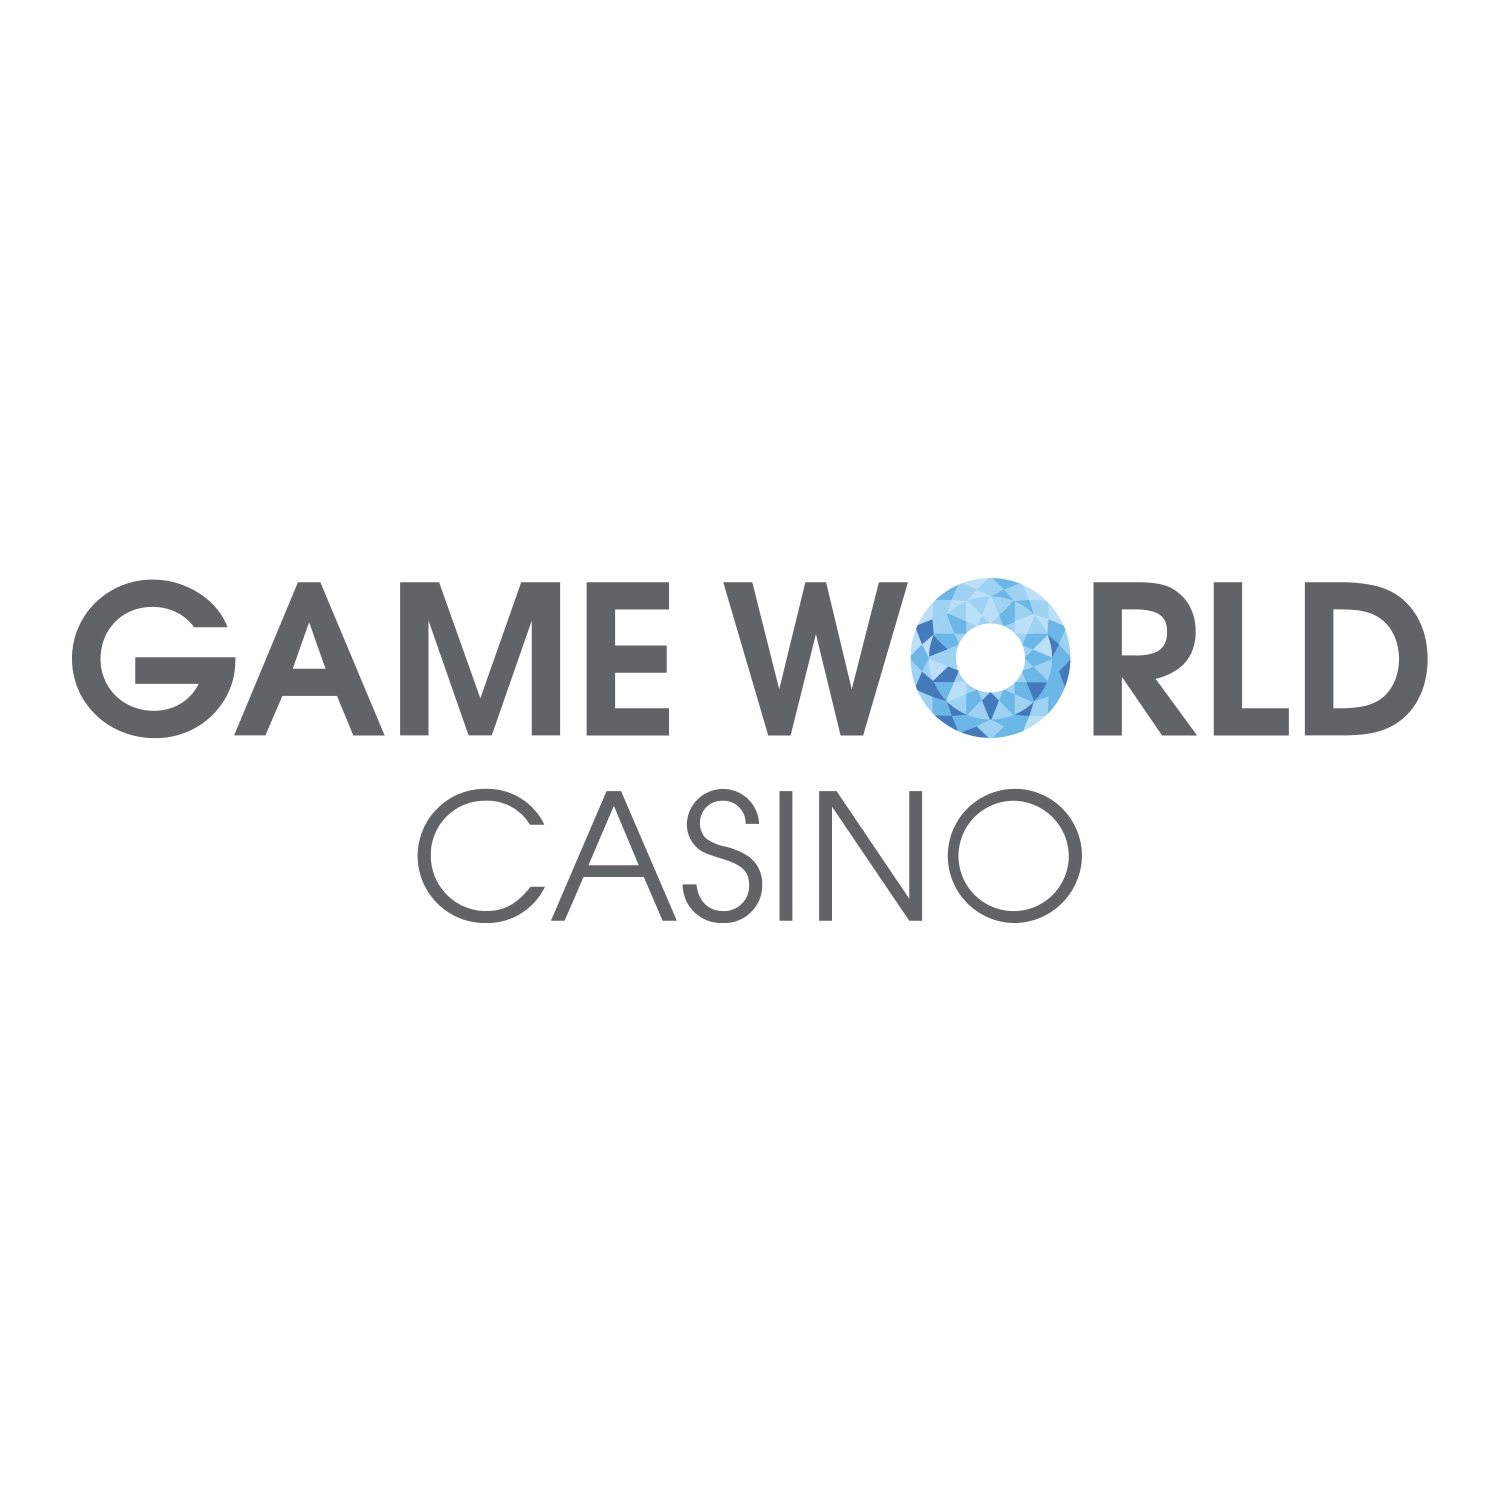 Game World casino logo rotund alb HQ